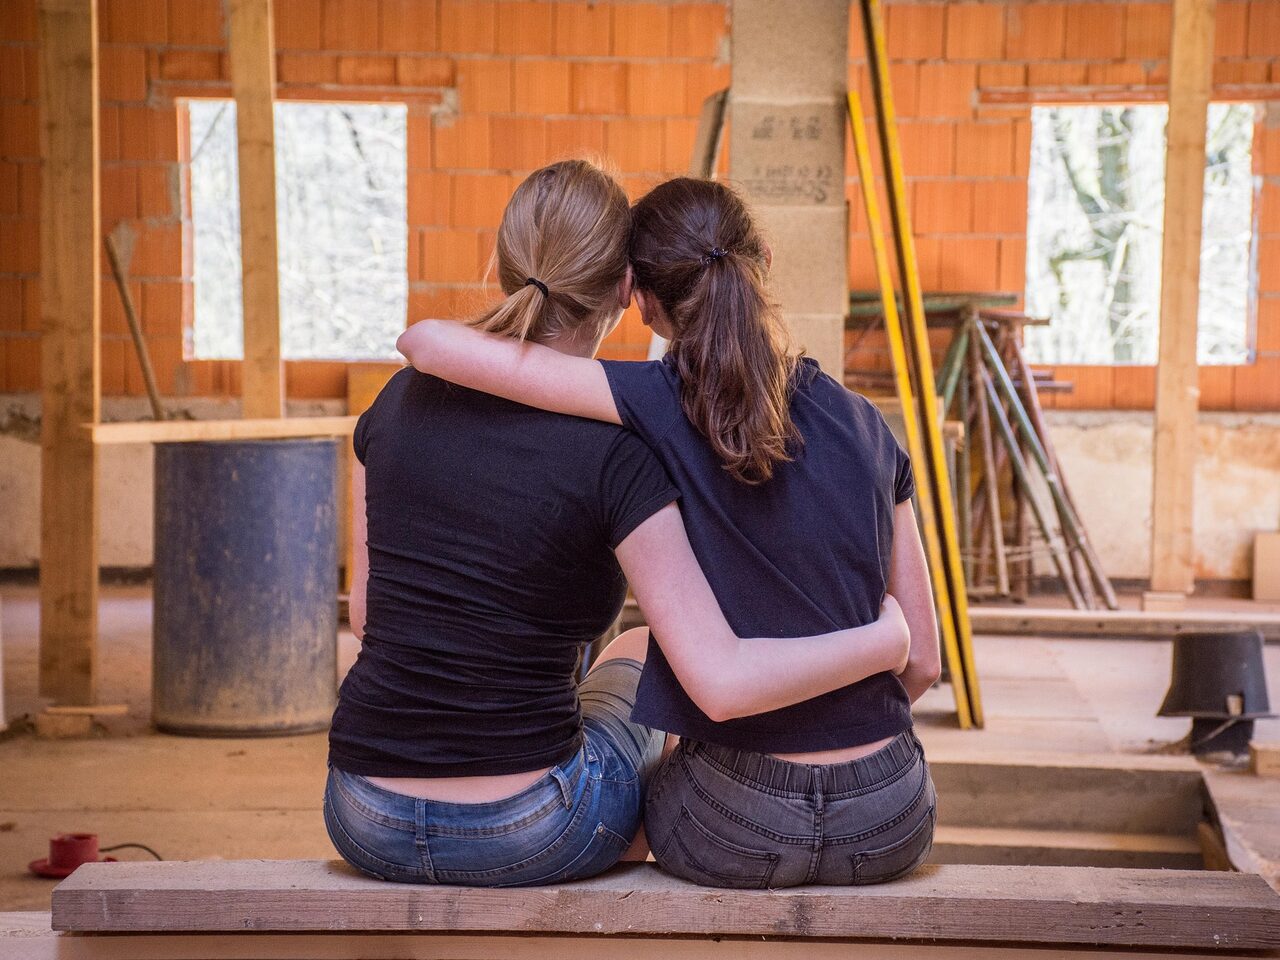 Zwei Frauen von hinten, die sich umarmen. Im Hintergrund ist eine Baustelle zu sehen.